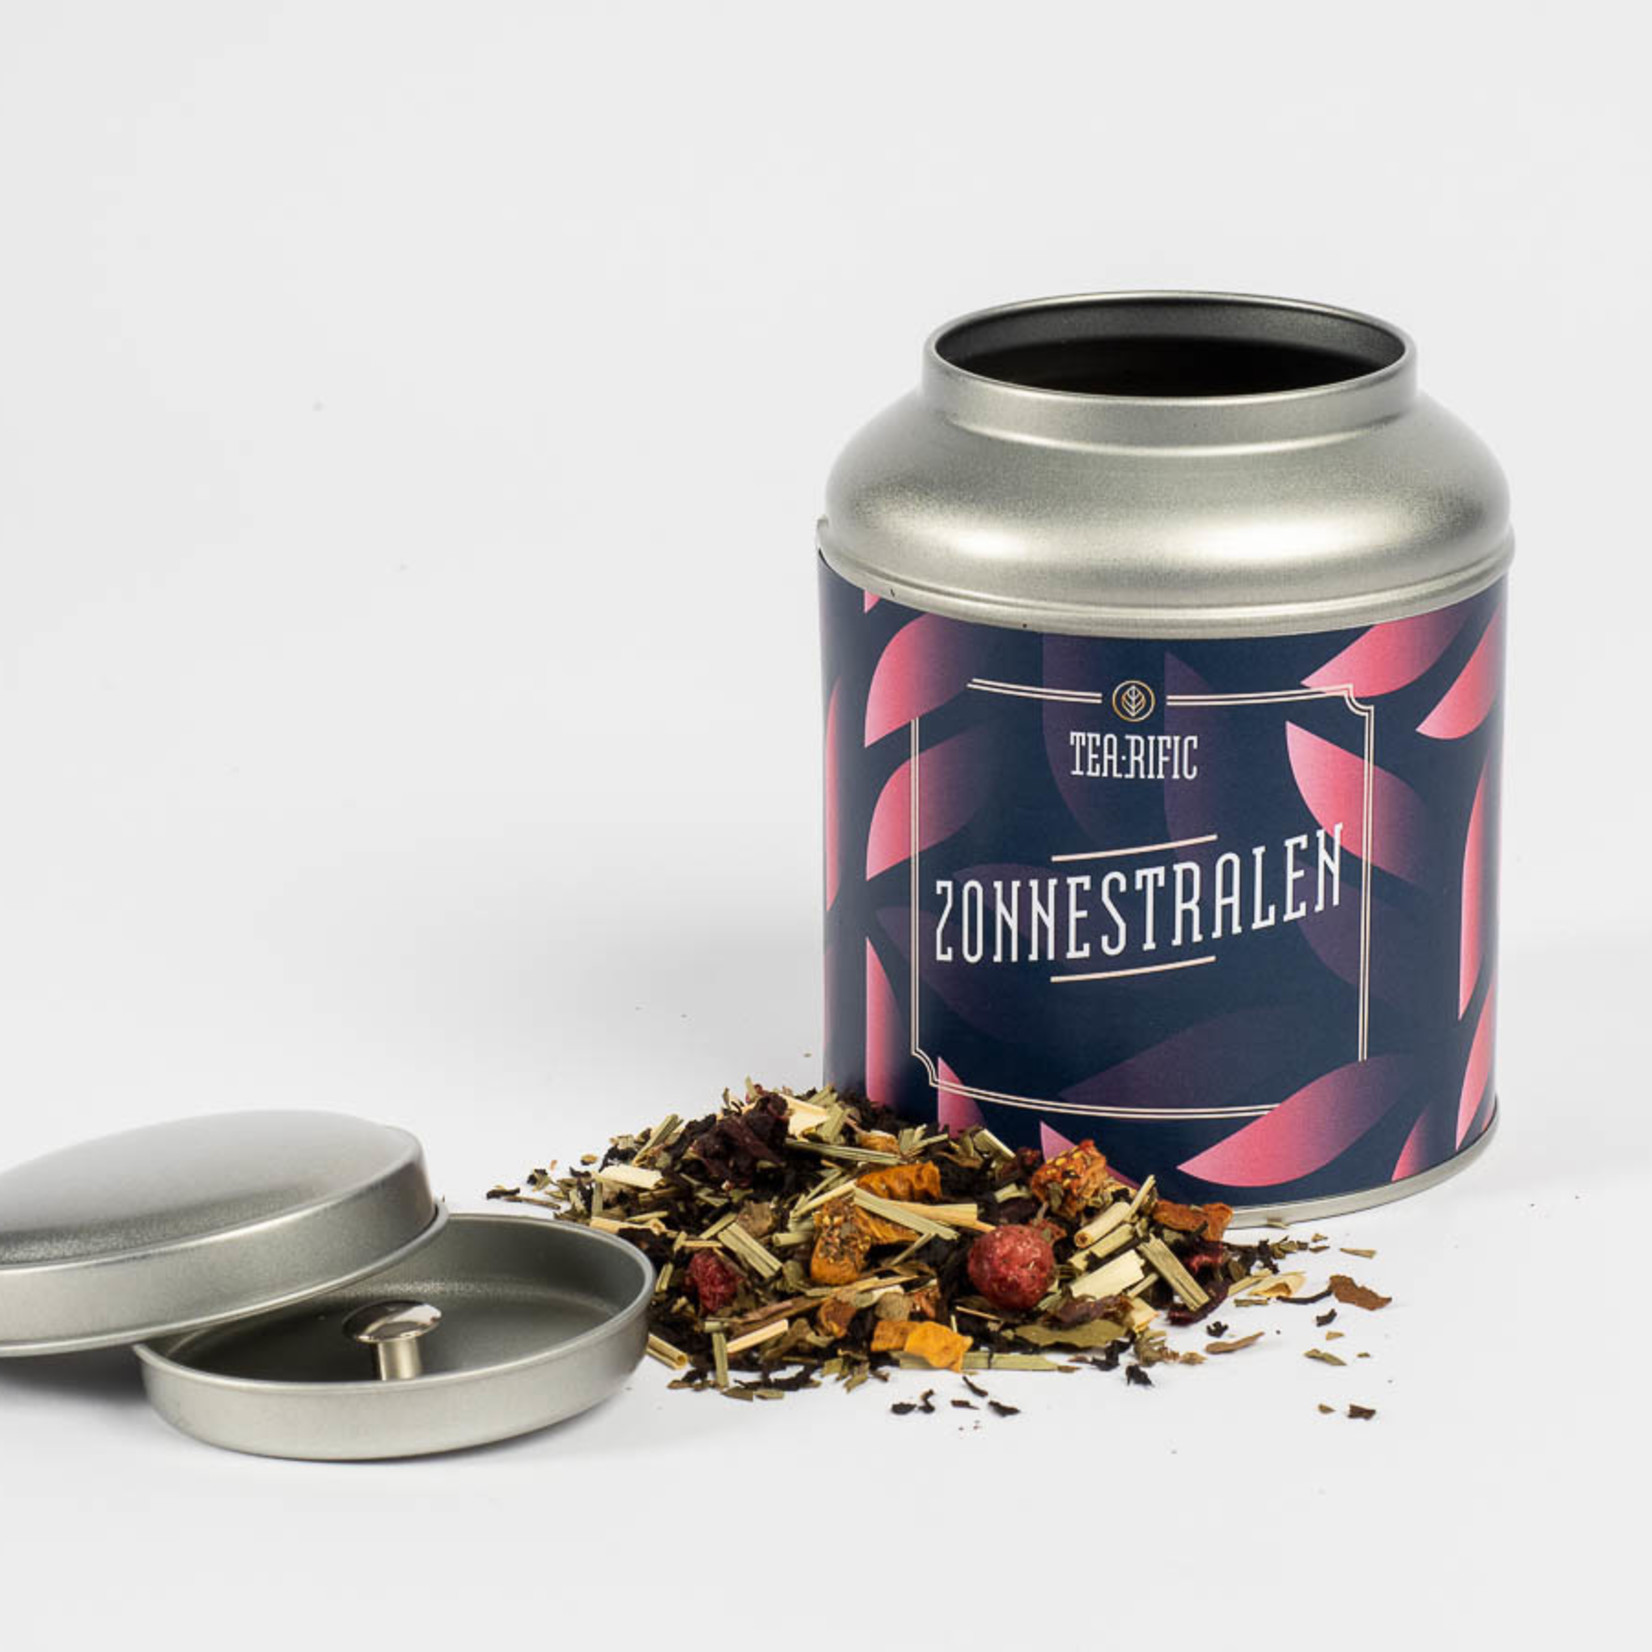 Tea-rific Zonnestralen - 50g losse thee cadeaublik